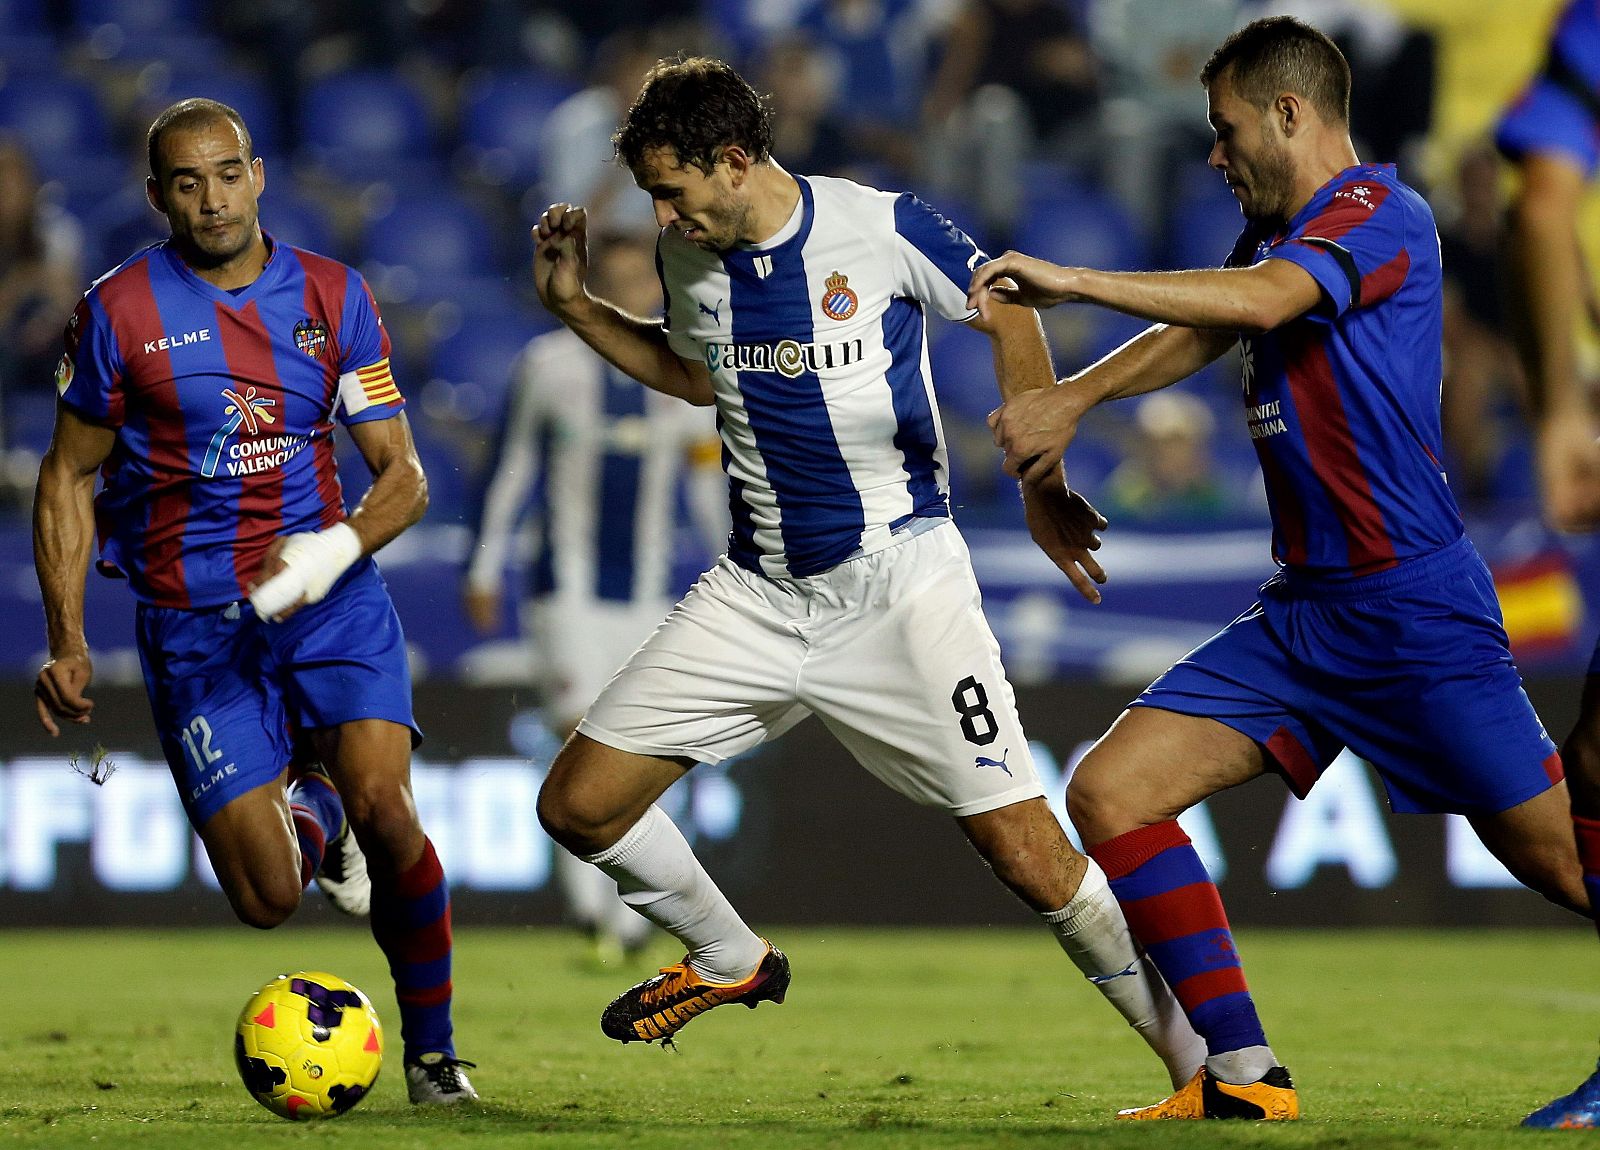 El delantero uruguayo del Espanyol, Christian Ricardo Stuani, intenta llevarse el balón ante los defensas del Levante, David Navarro y Juanfran.